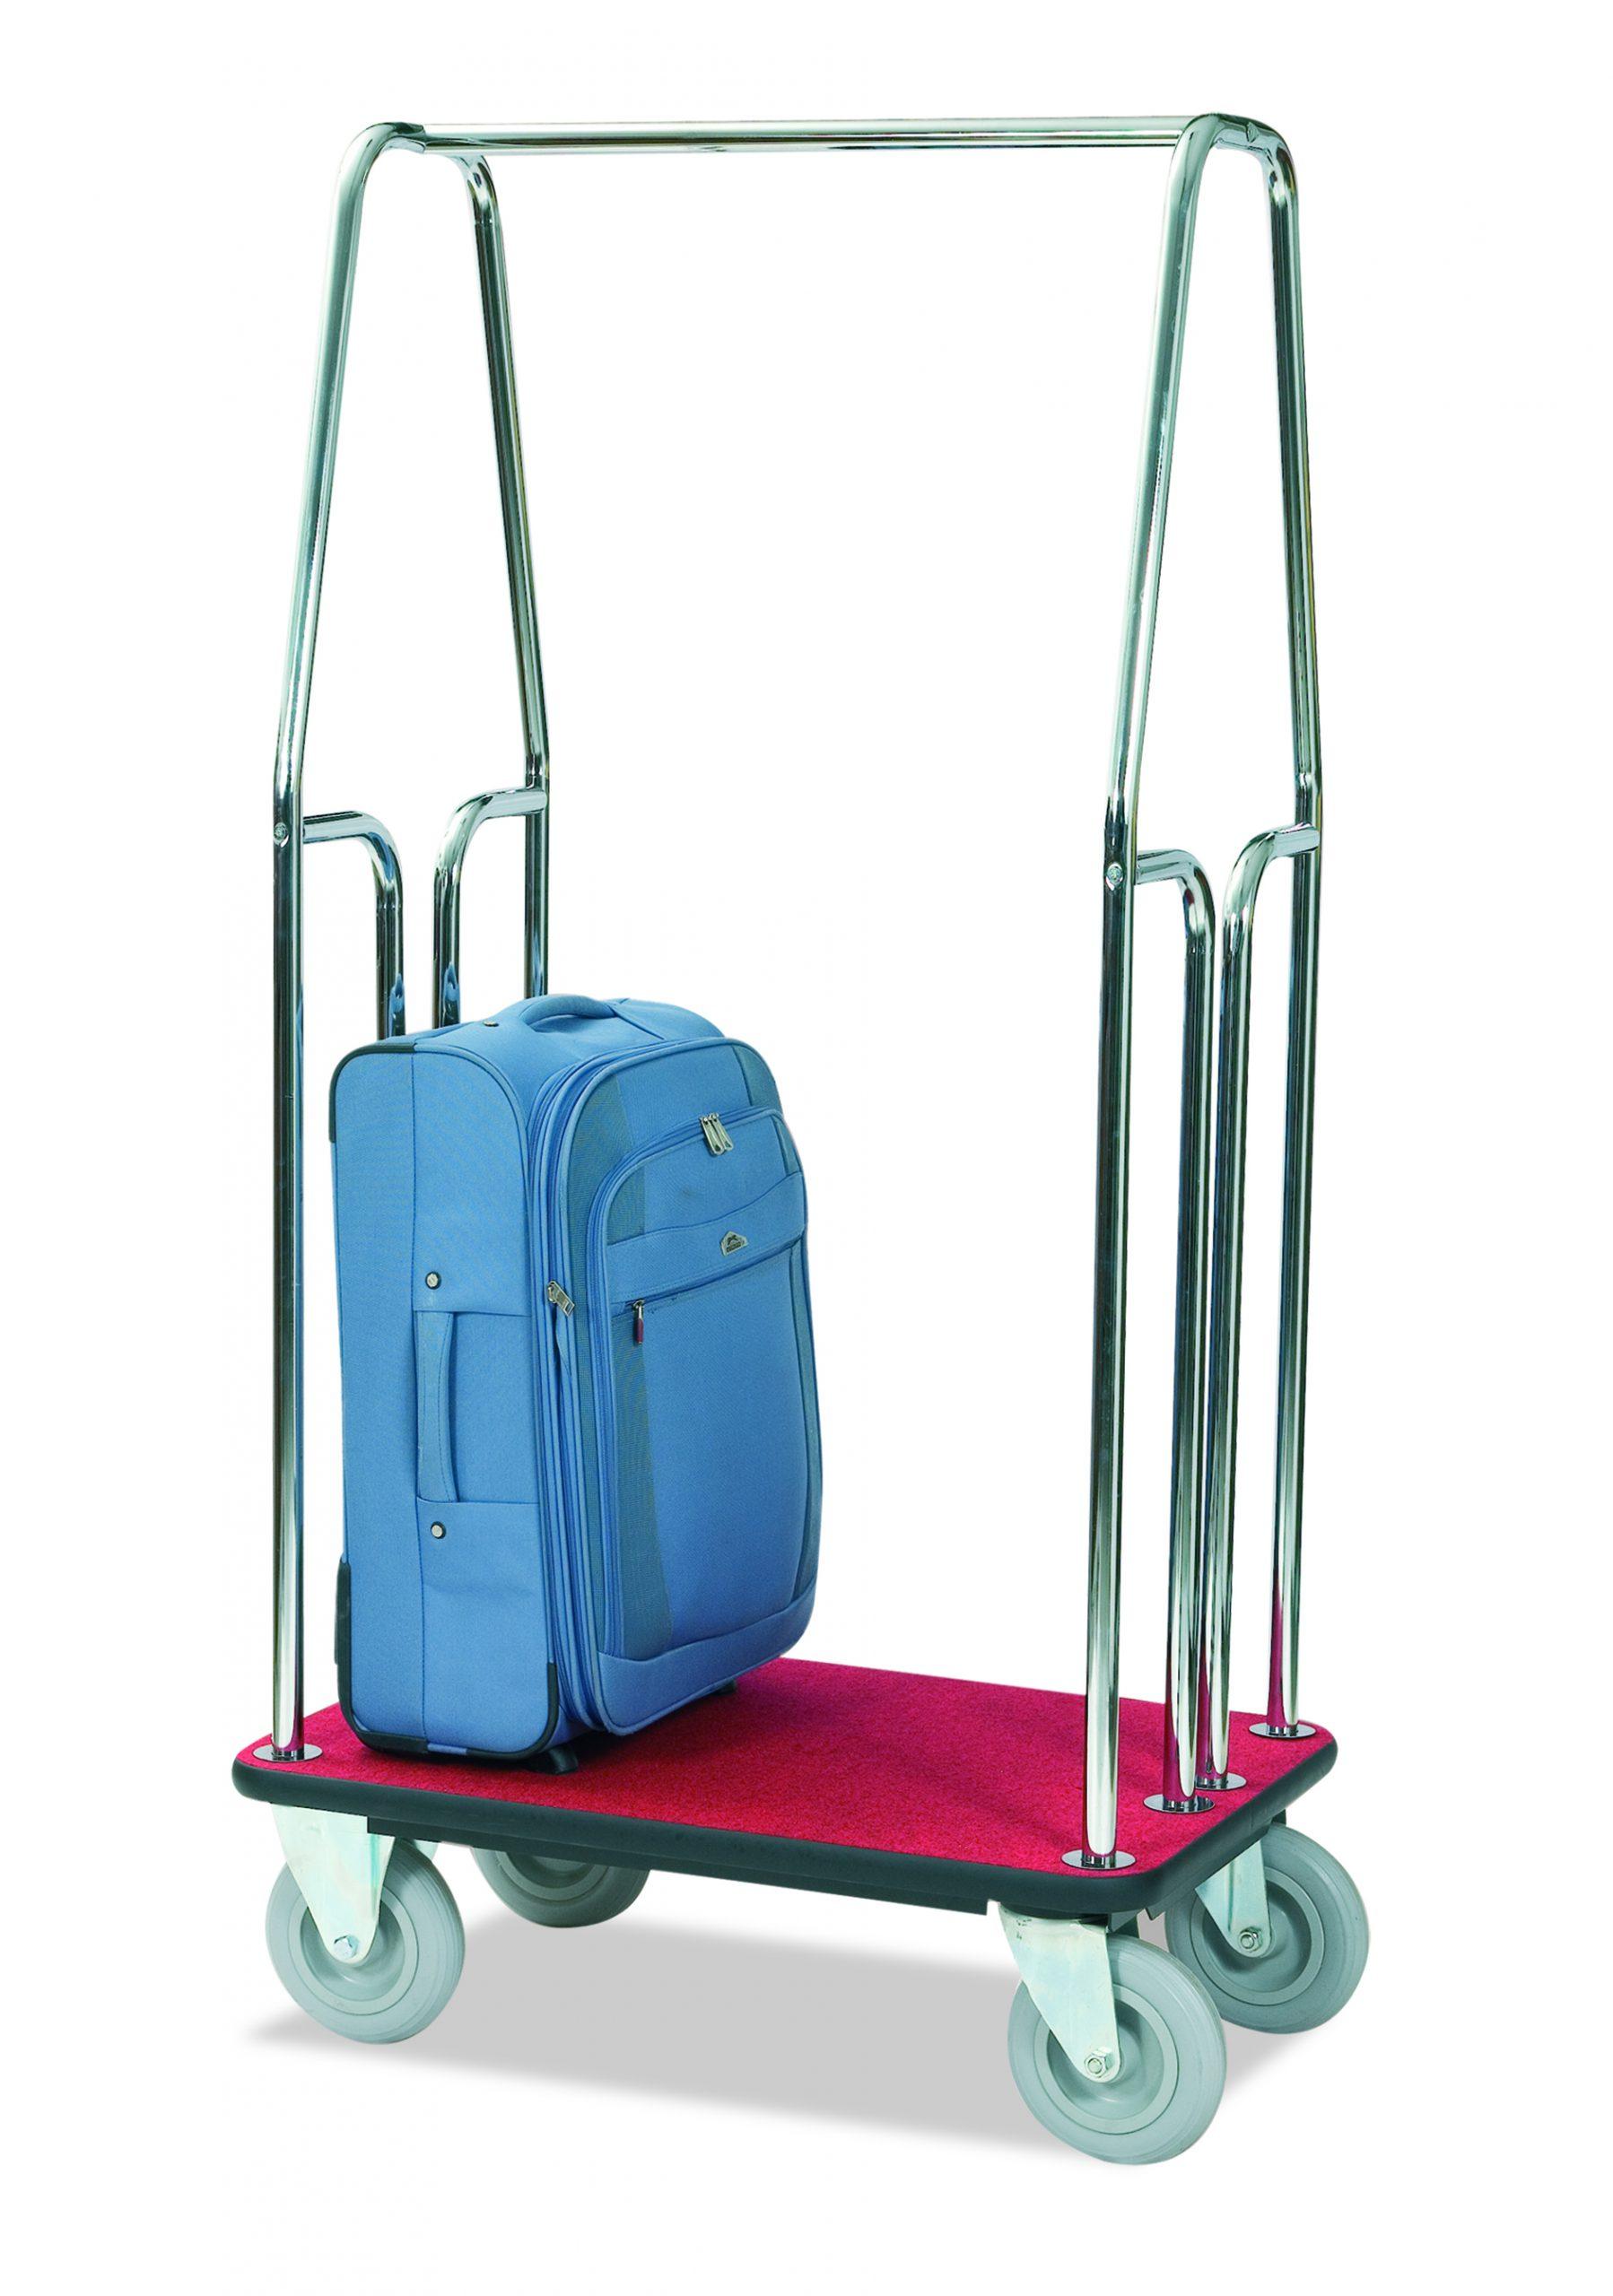 luggage trolley wheels